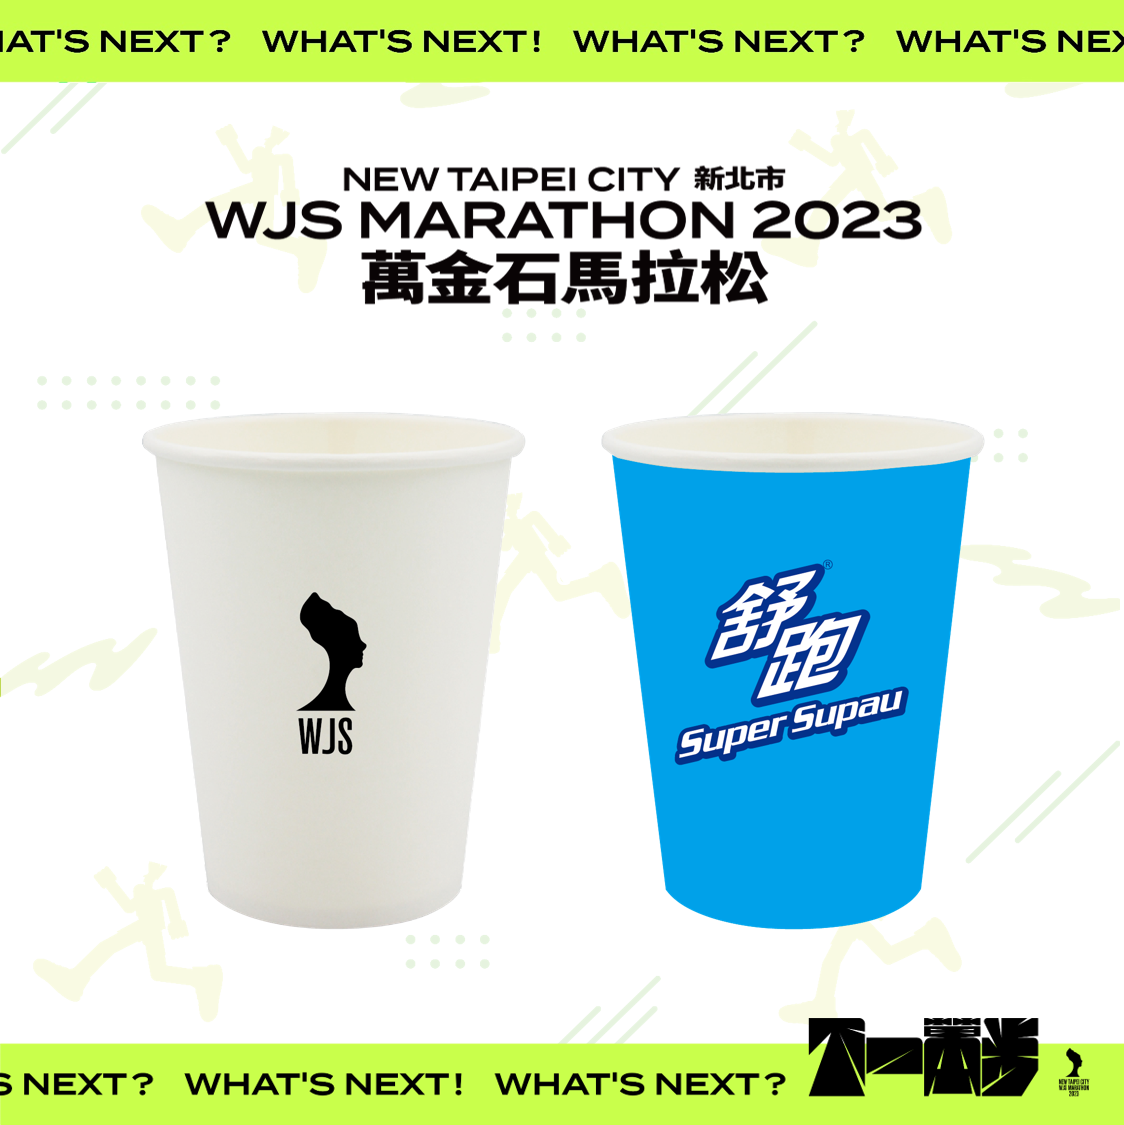 白色杯子是一般水 藍色杯子是運動飲料 照片來源：新北市萬金石馬拉松官網